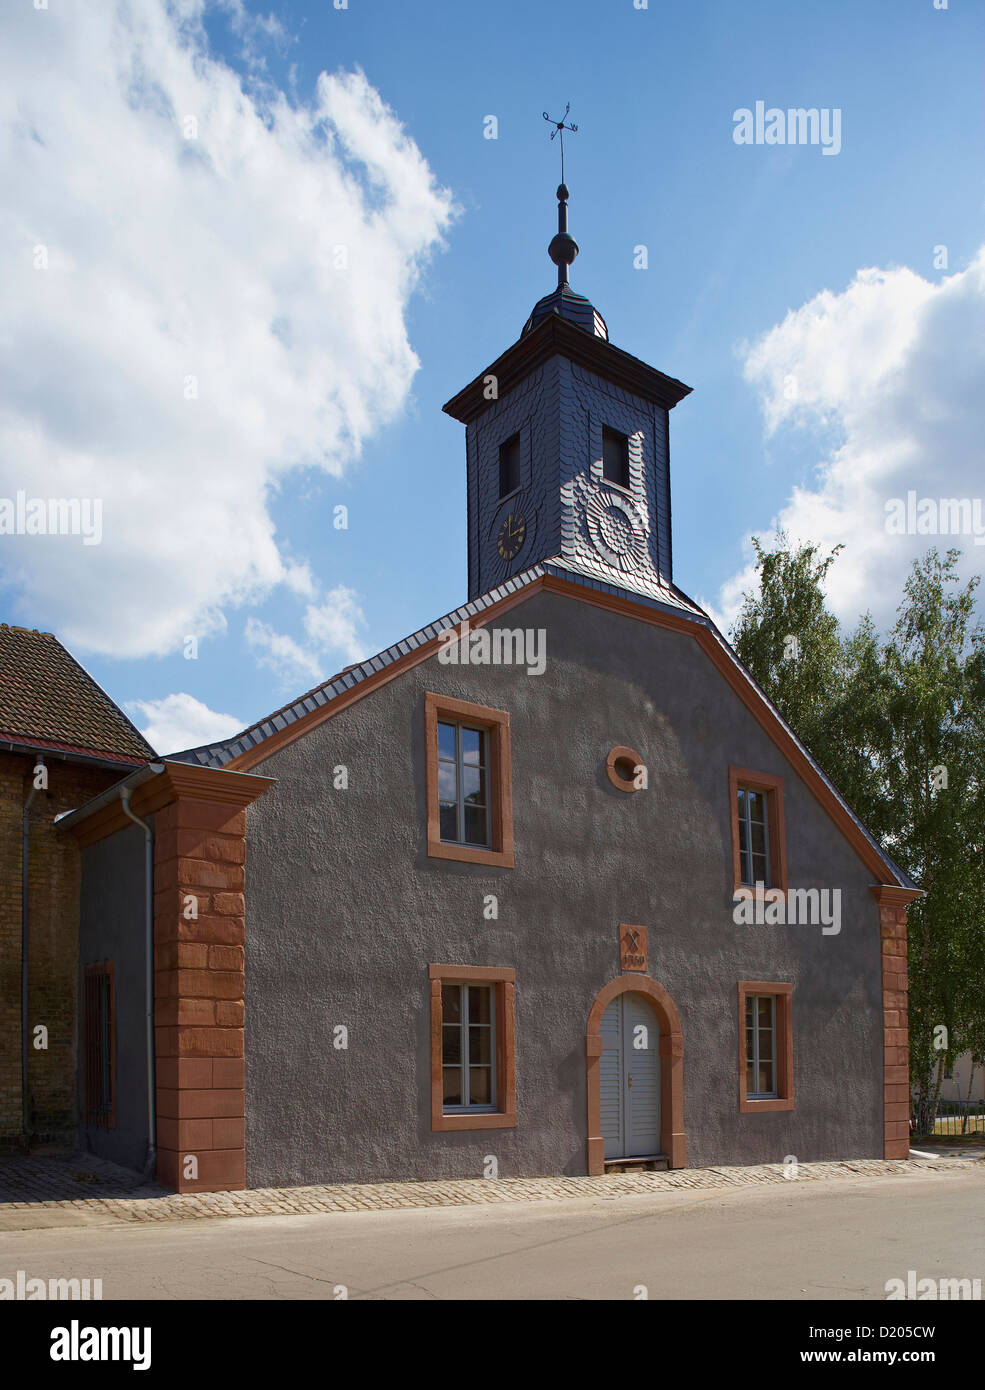 Alte Schmelz, antiche fonderie, chiesa dal 1750 nella luce del sole, St. Ingbert, Saarland, Germania, Europa Foto Stock